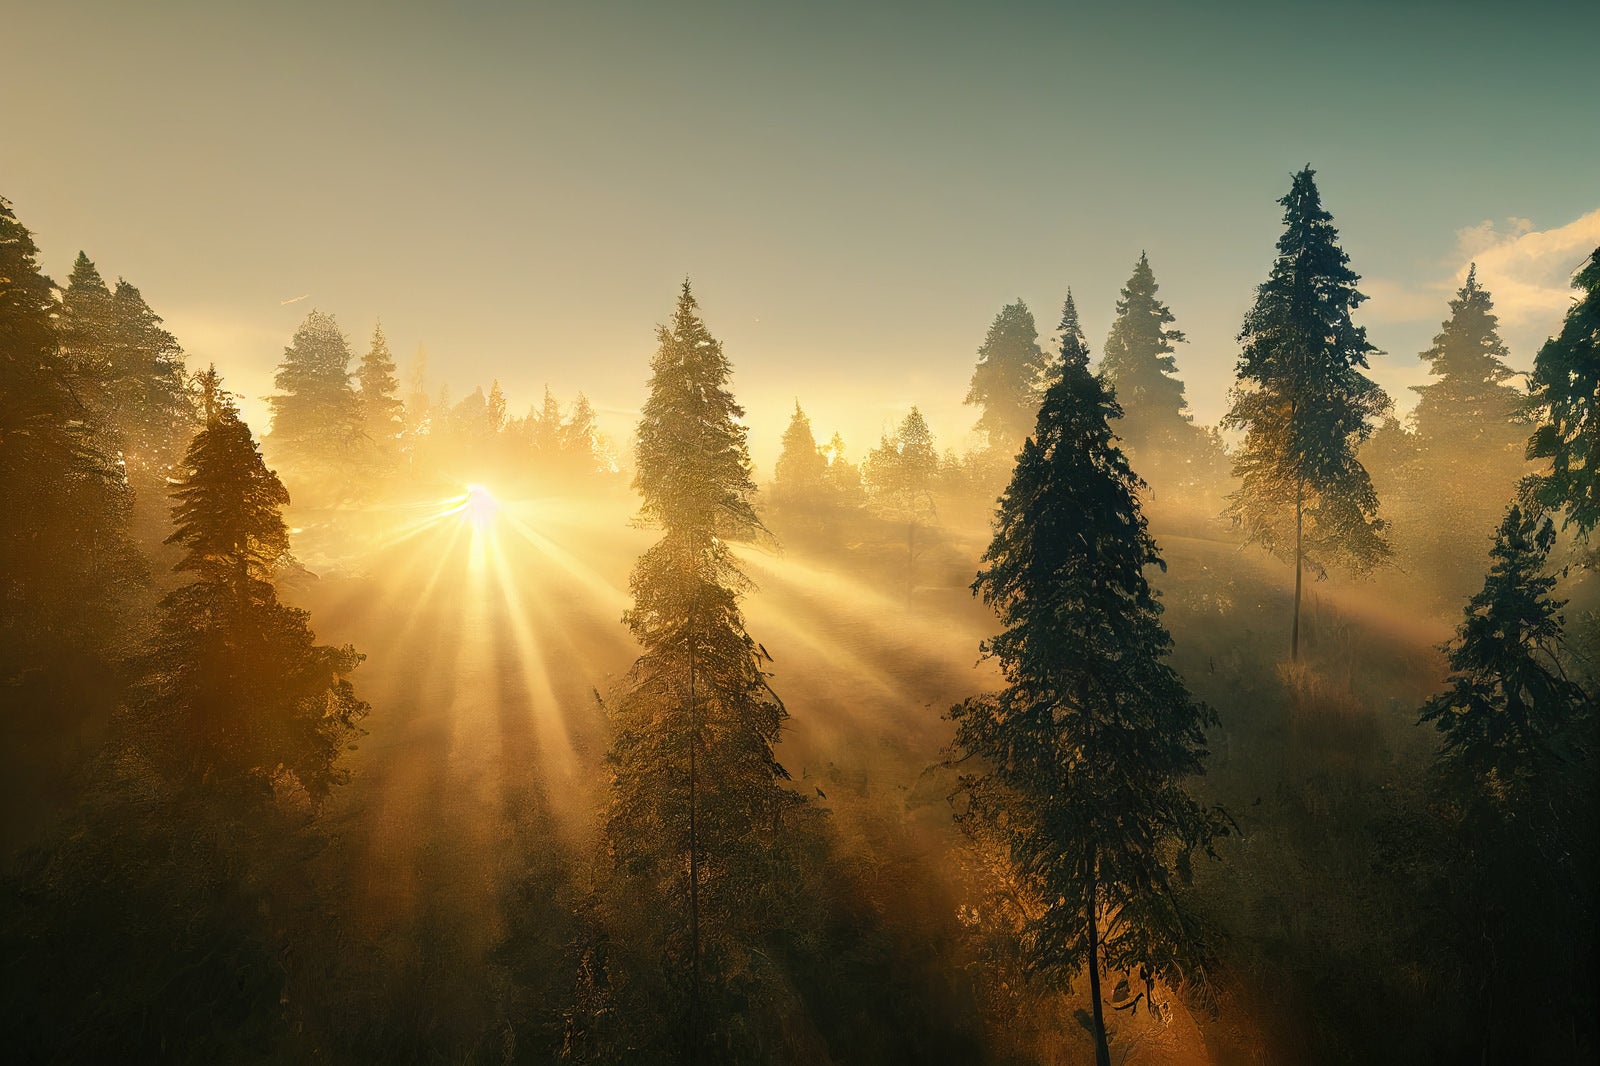 「林間に降り注ぐ夕日の光芒」の写真